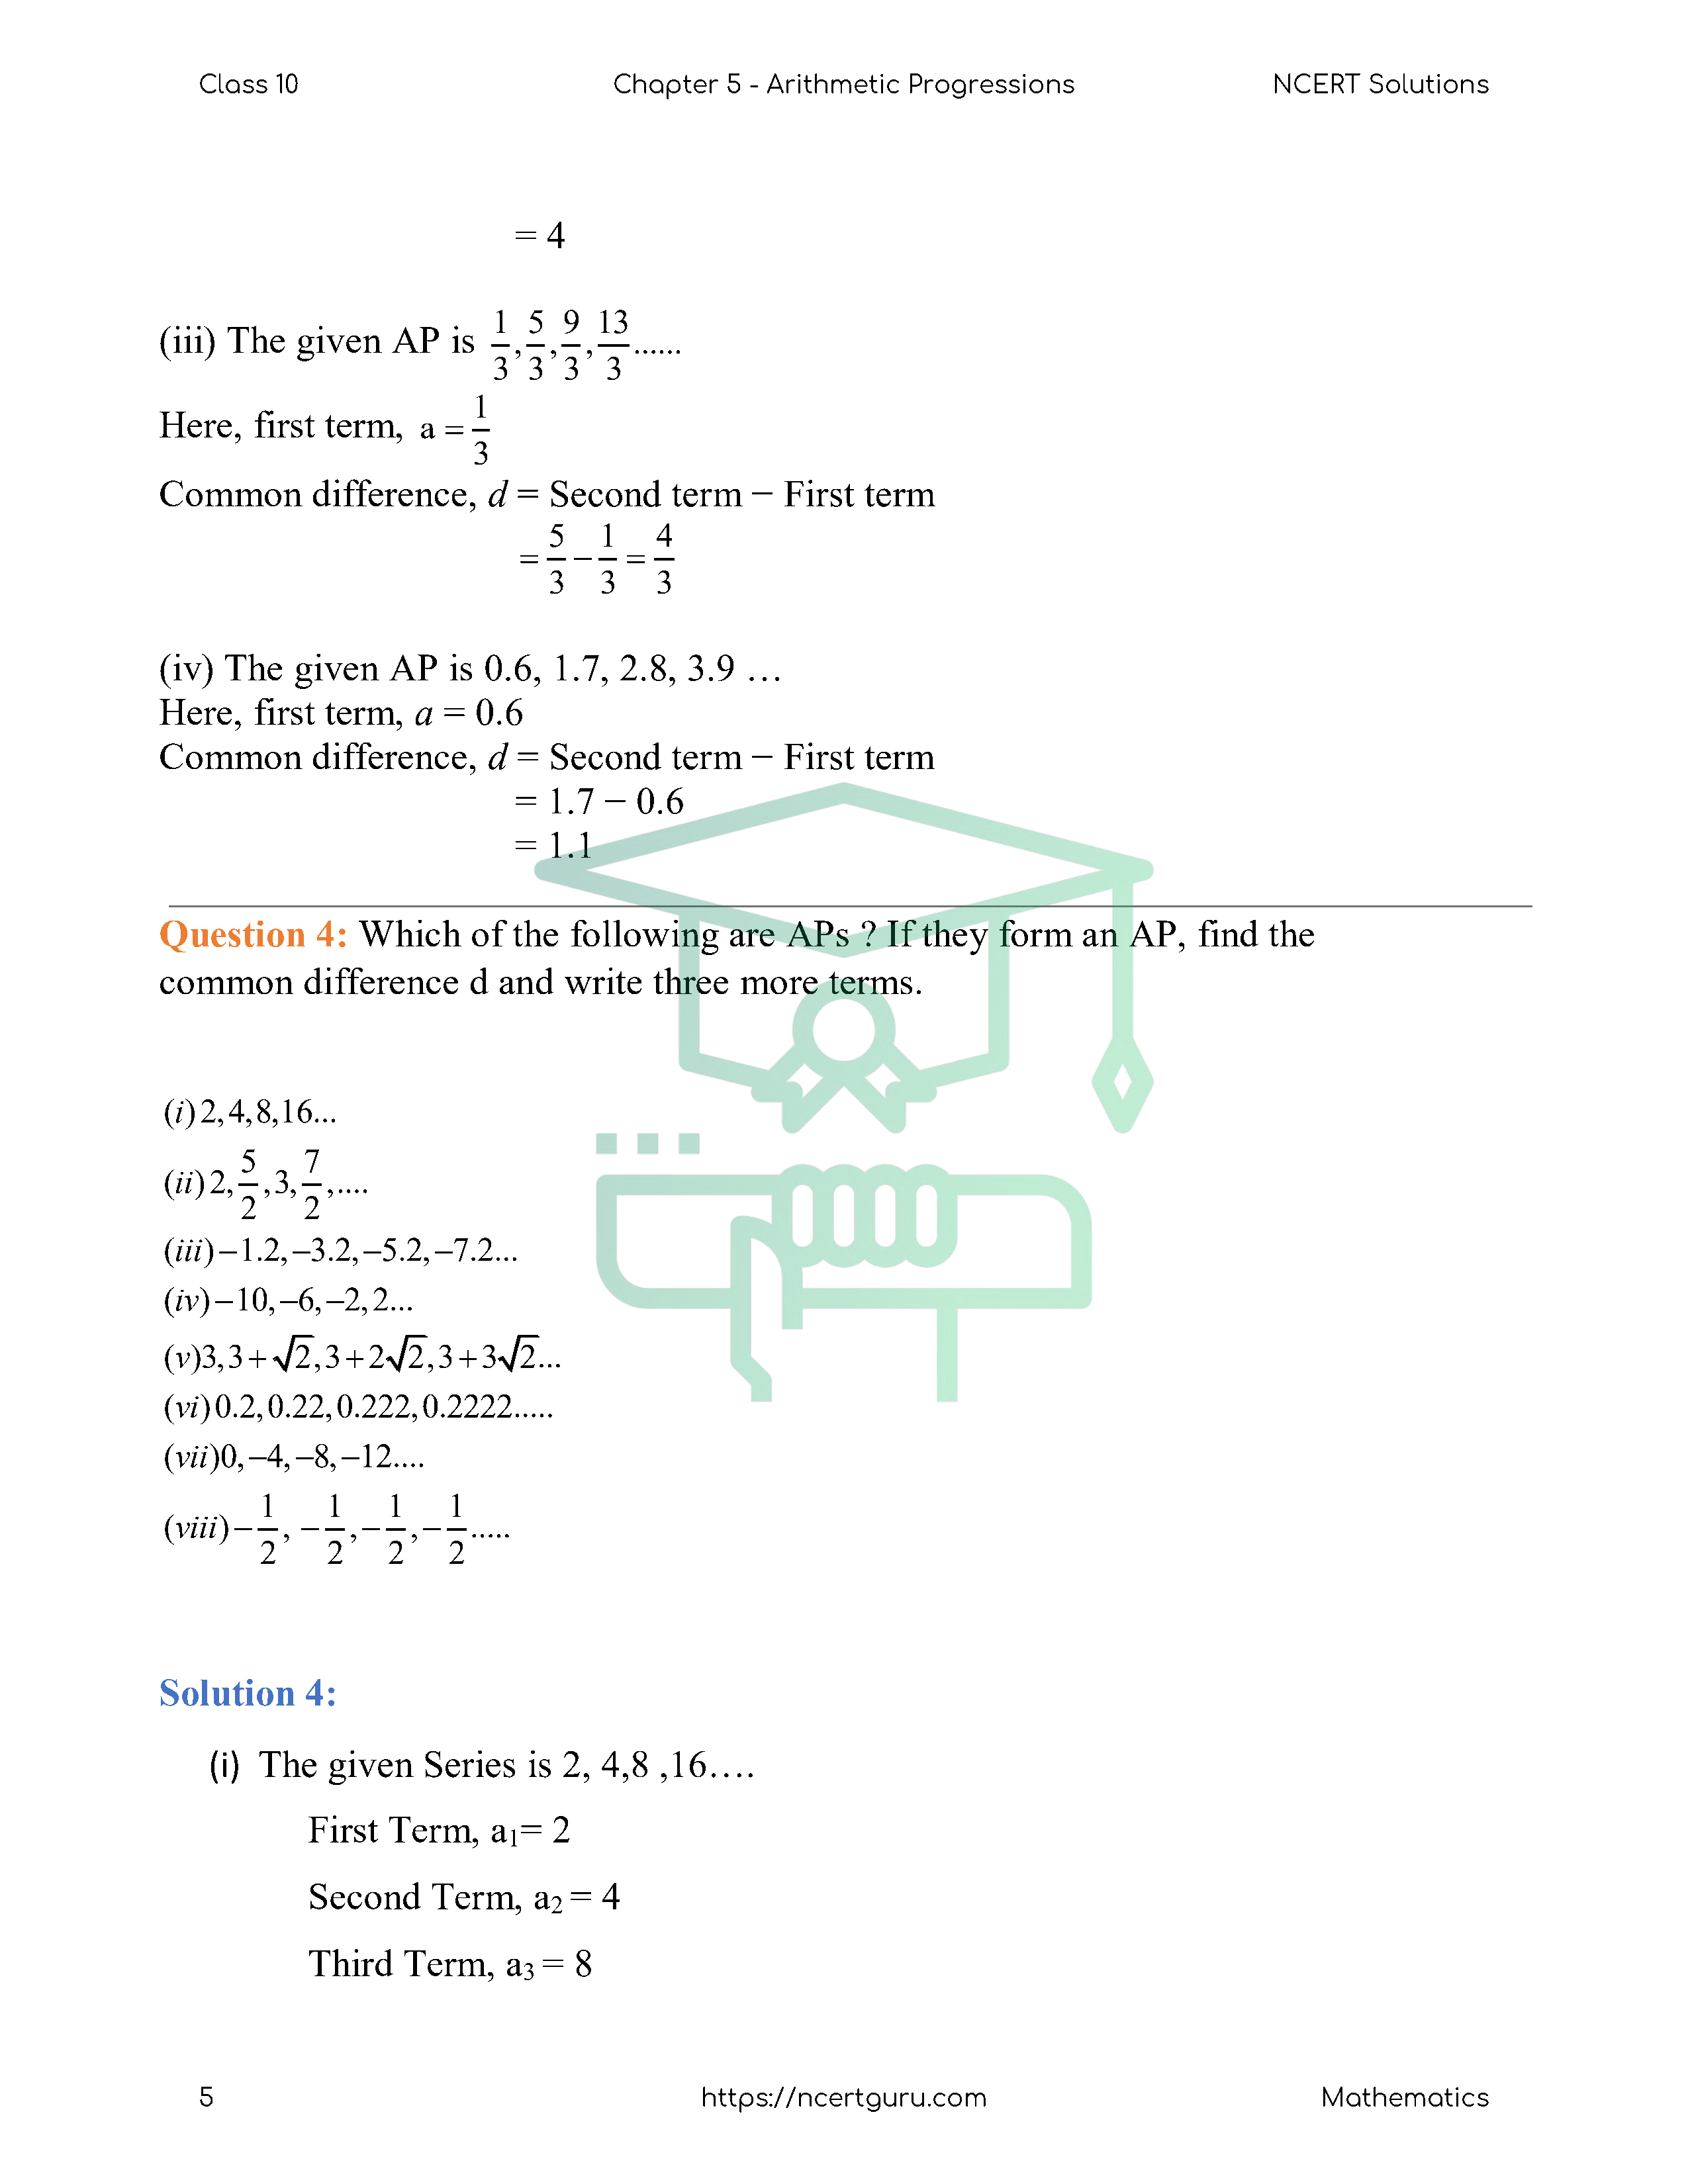 NCERT Solutions for Class 10 Maths Chapter 5